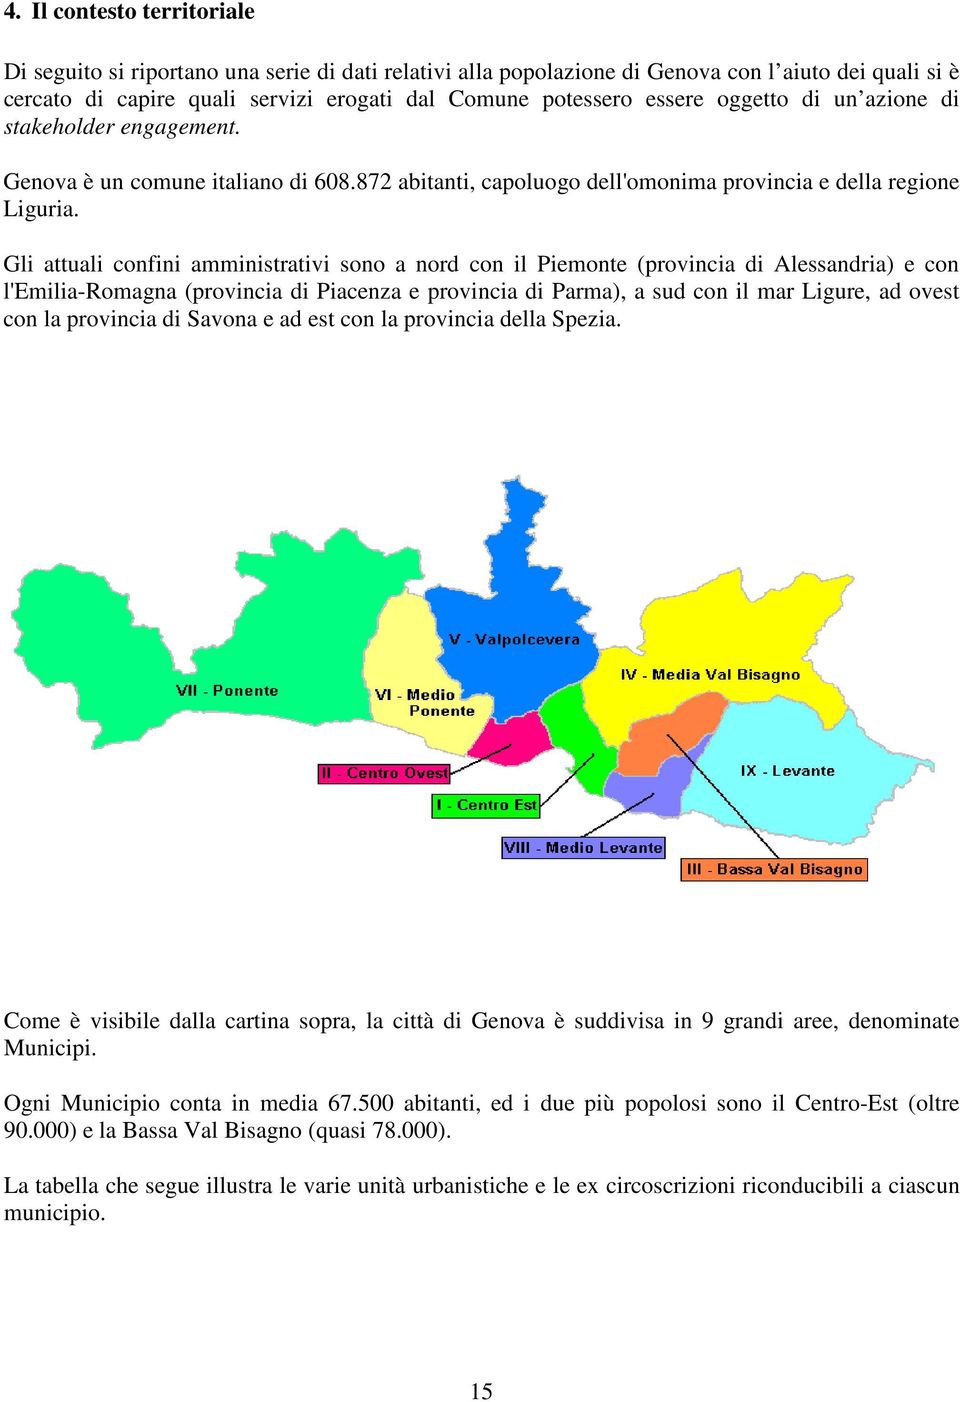 Gli attuali confini amministrativi sono a nord con il Piemonte (provincia di Alessandria) e con l'emilia-romagna (provincia di Piacenza e provincia di Parma), a sud con il mar Ligure, ad ovest con la